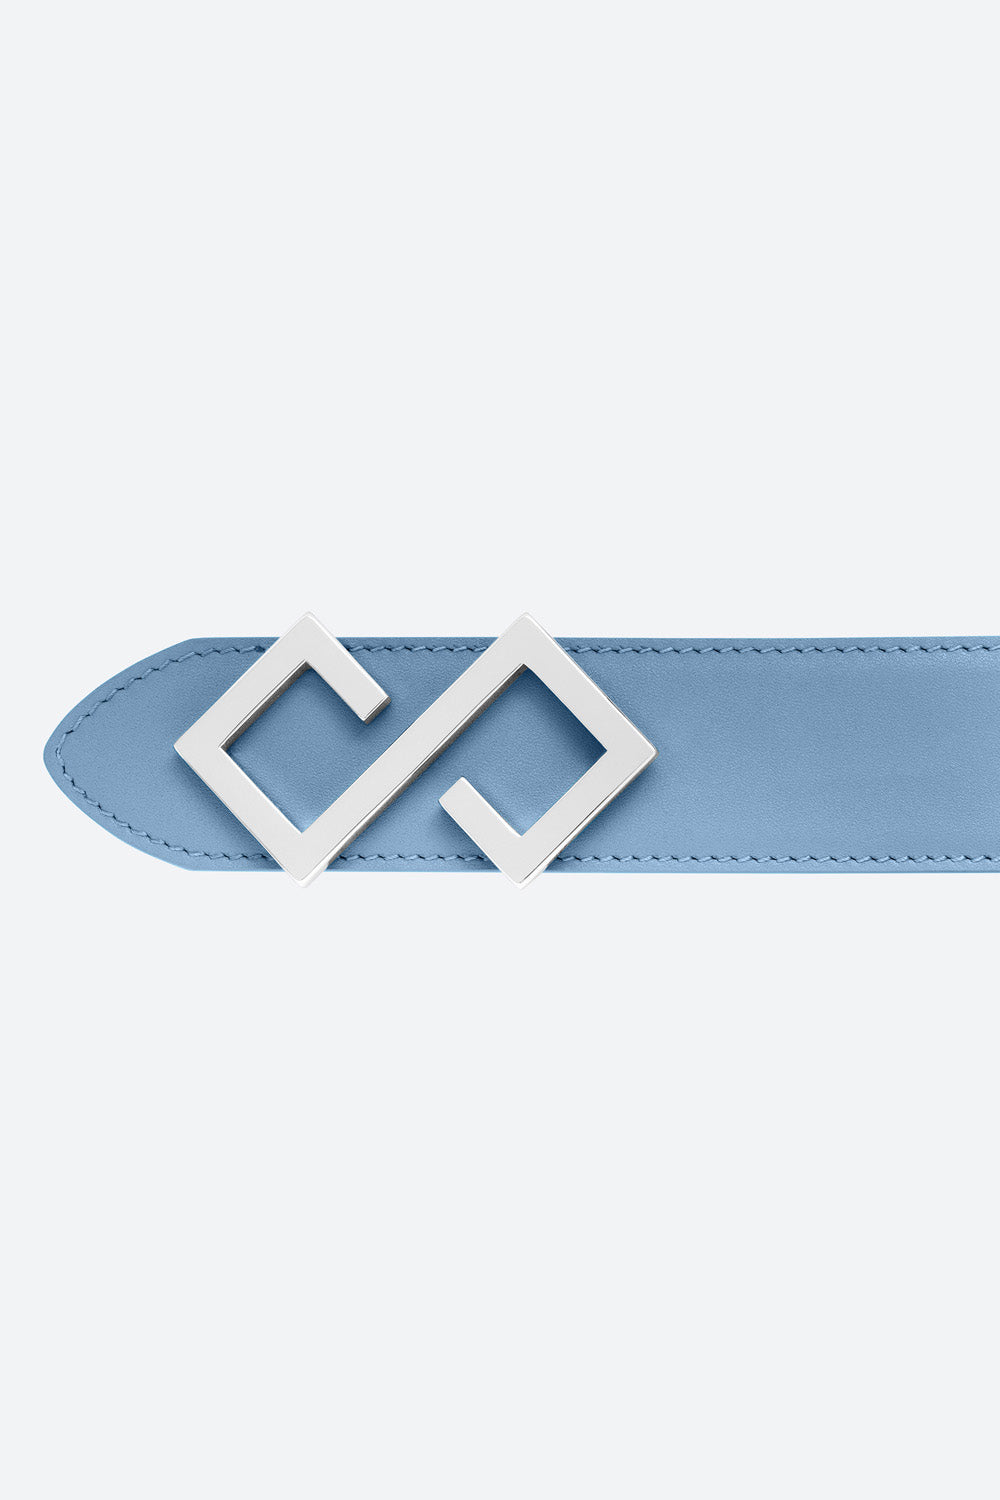 Women's Alvear Belt in Sky Blue, Silver Buckle